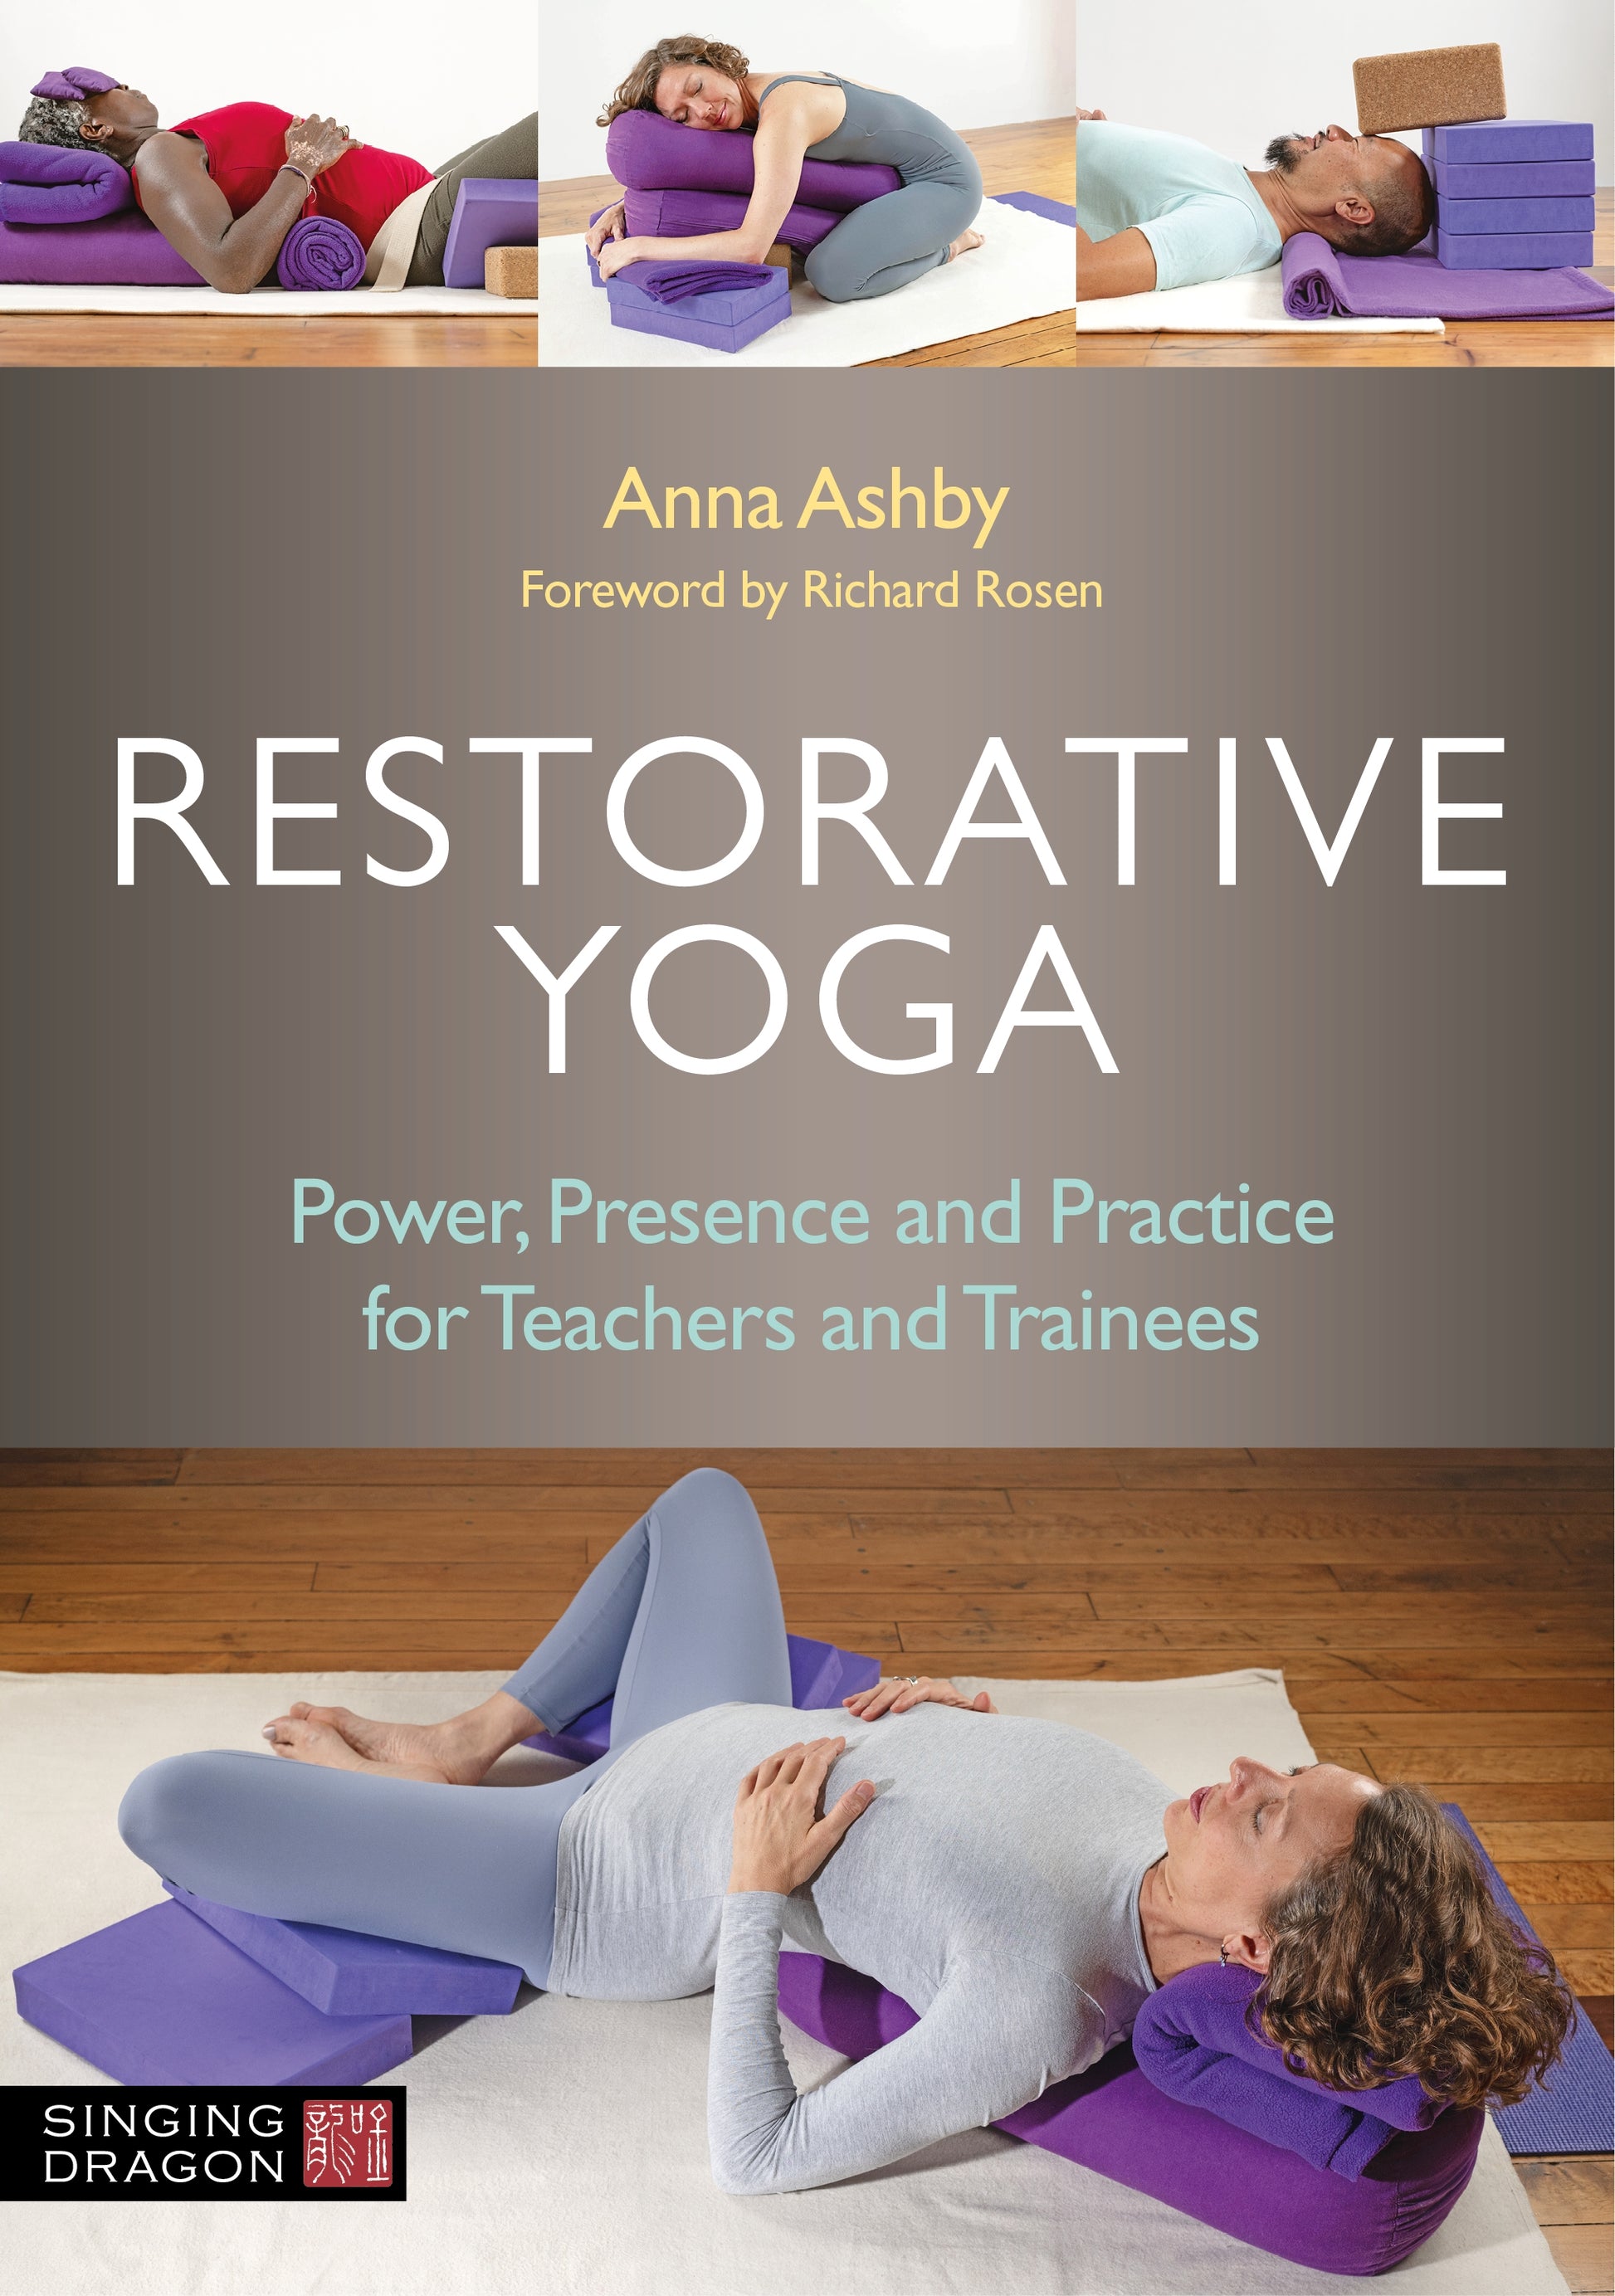 Restorative Yoga by Anna Ashby, Richard Rosen